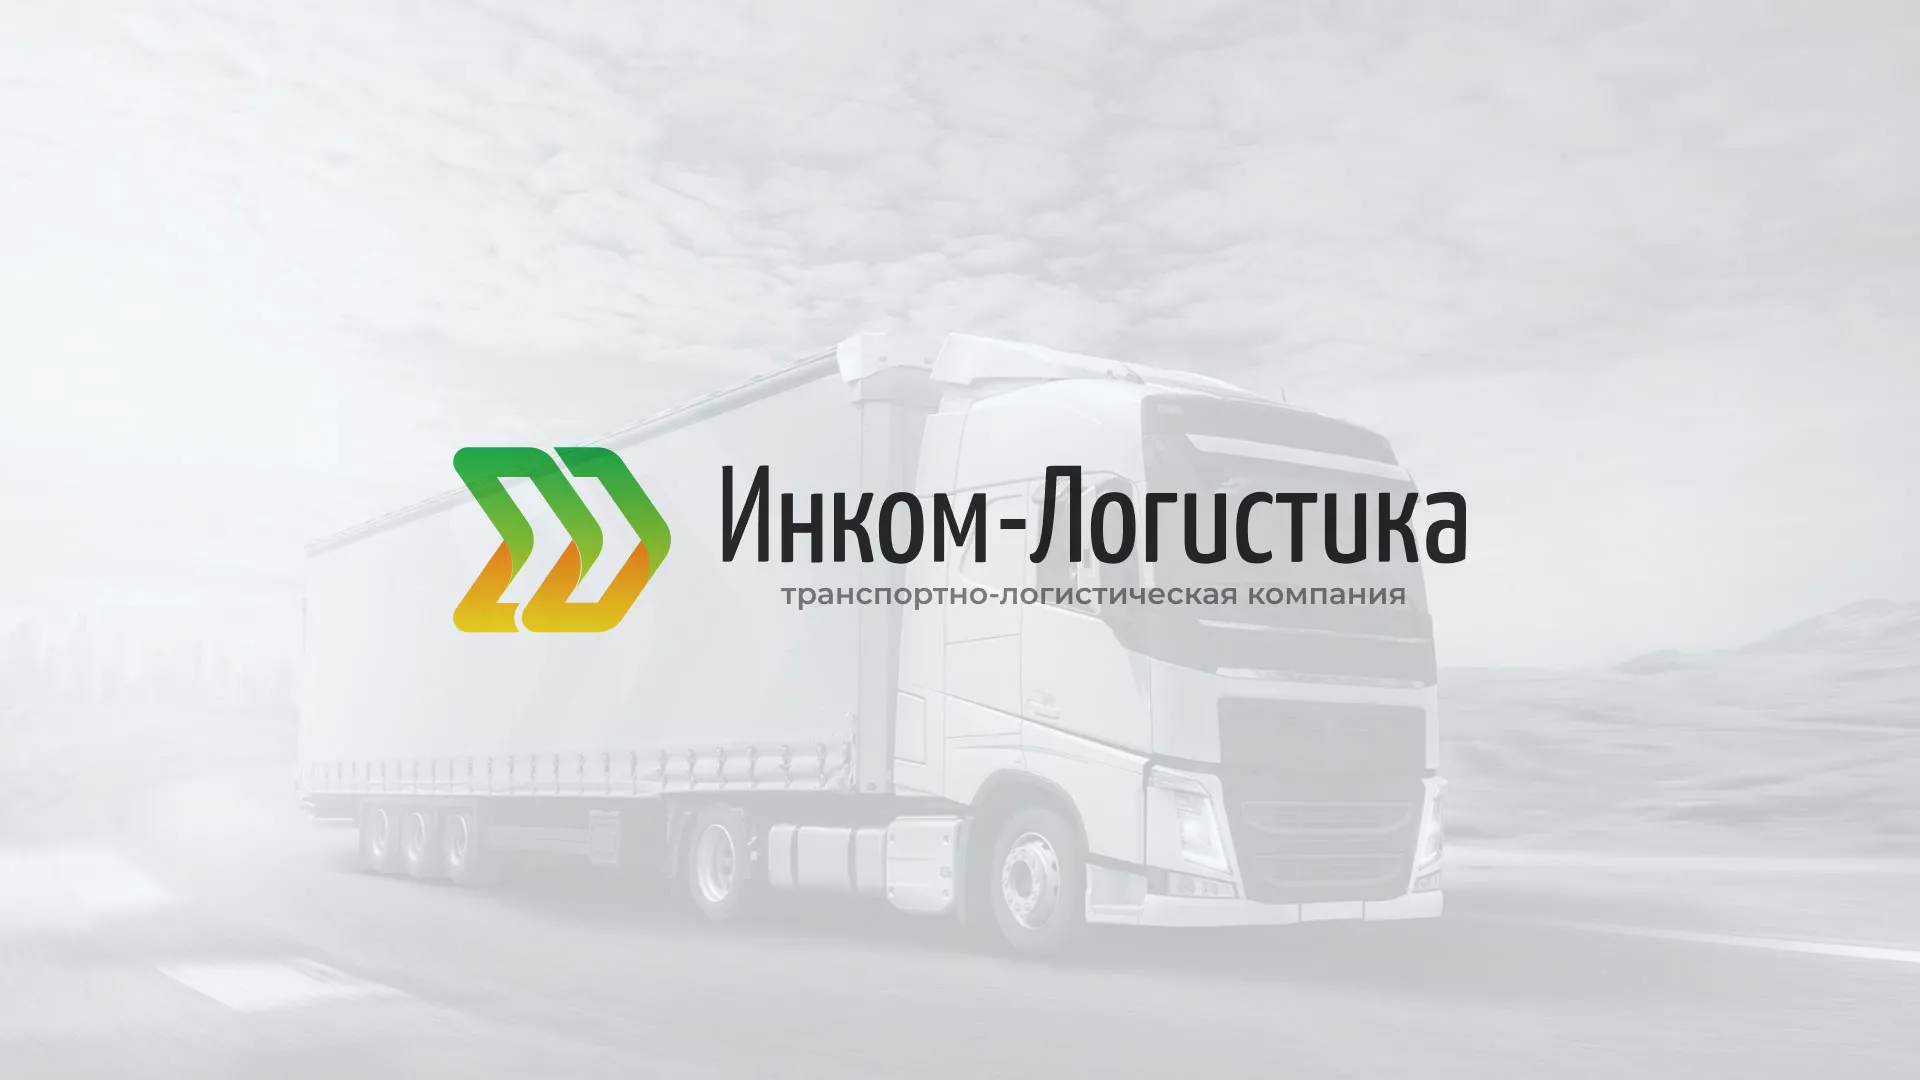 Разработка логотипа и сайта компании «Инком-Логистика» в Батайске